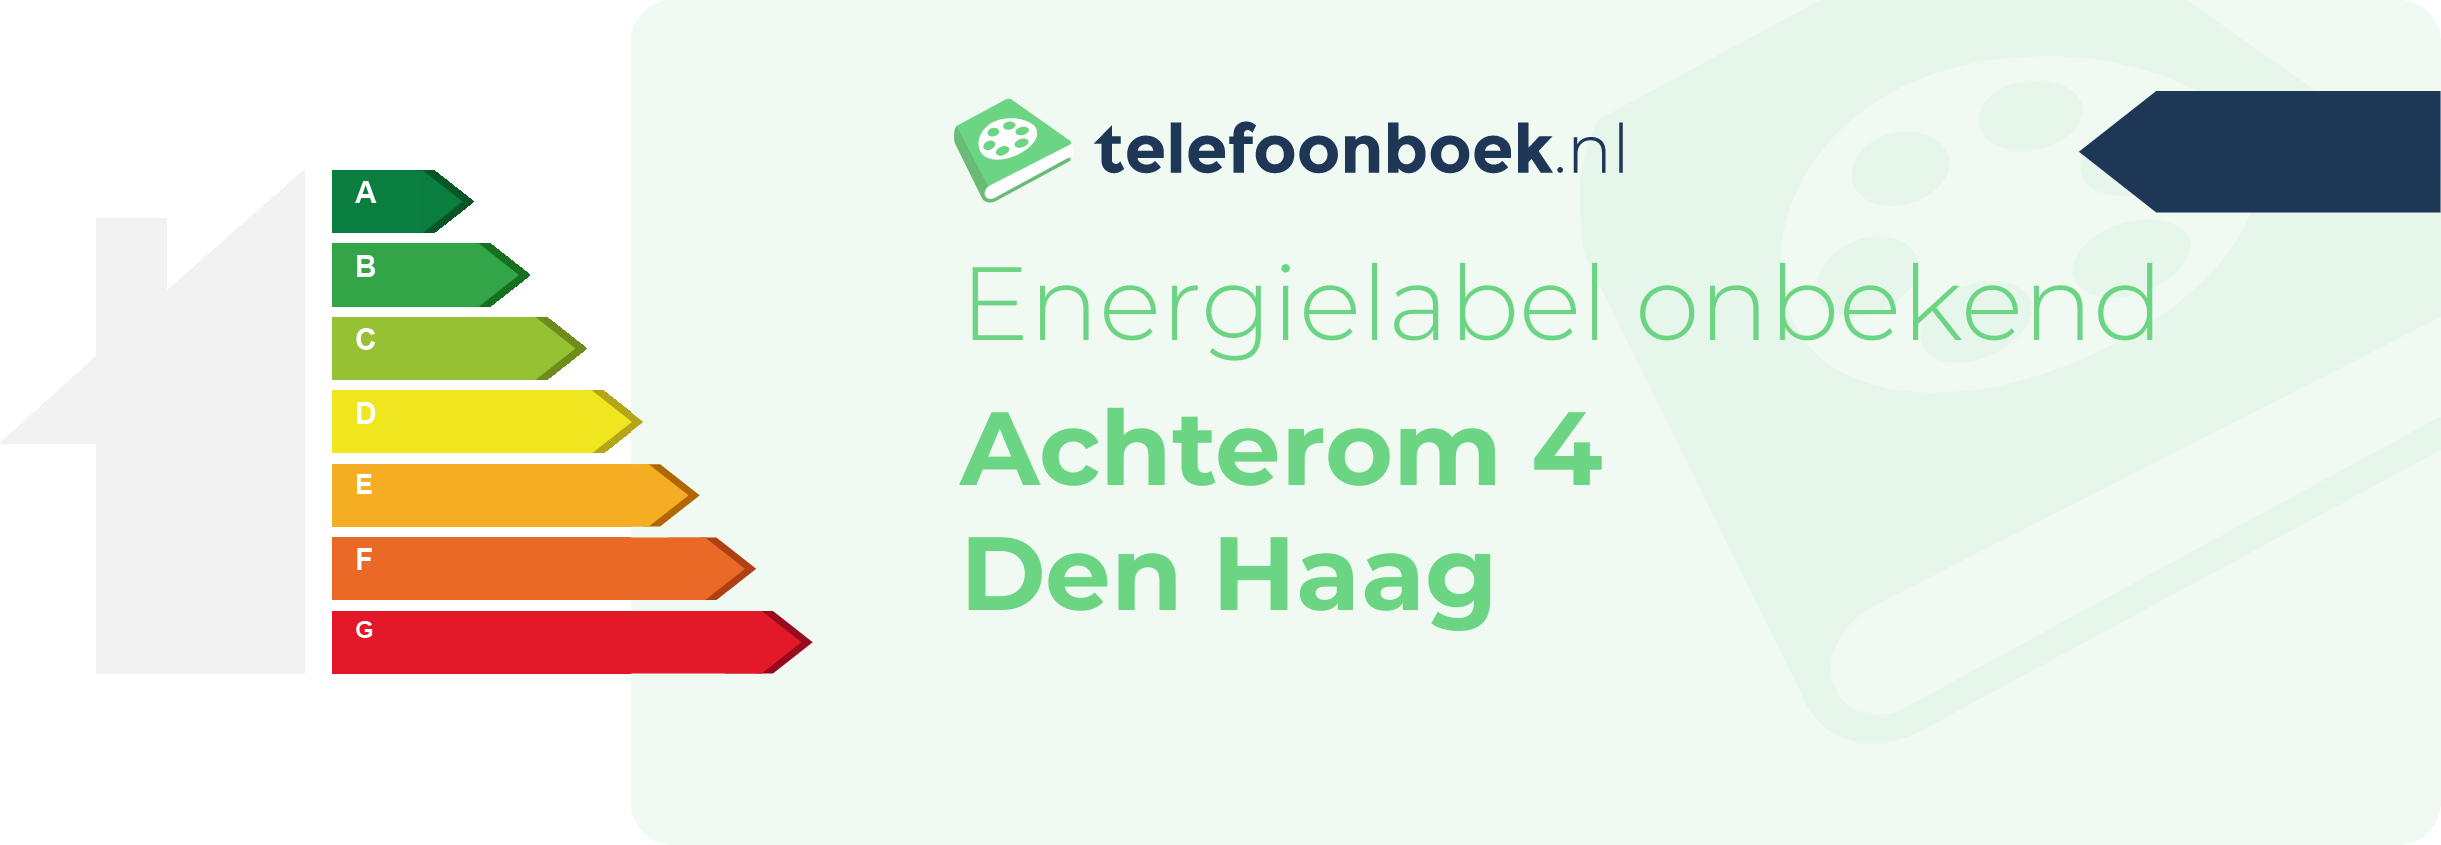 Energielabel Achterom 4 Den Haag